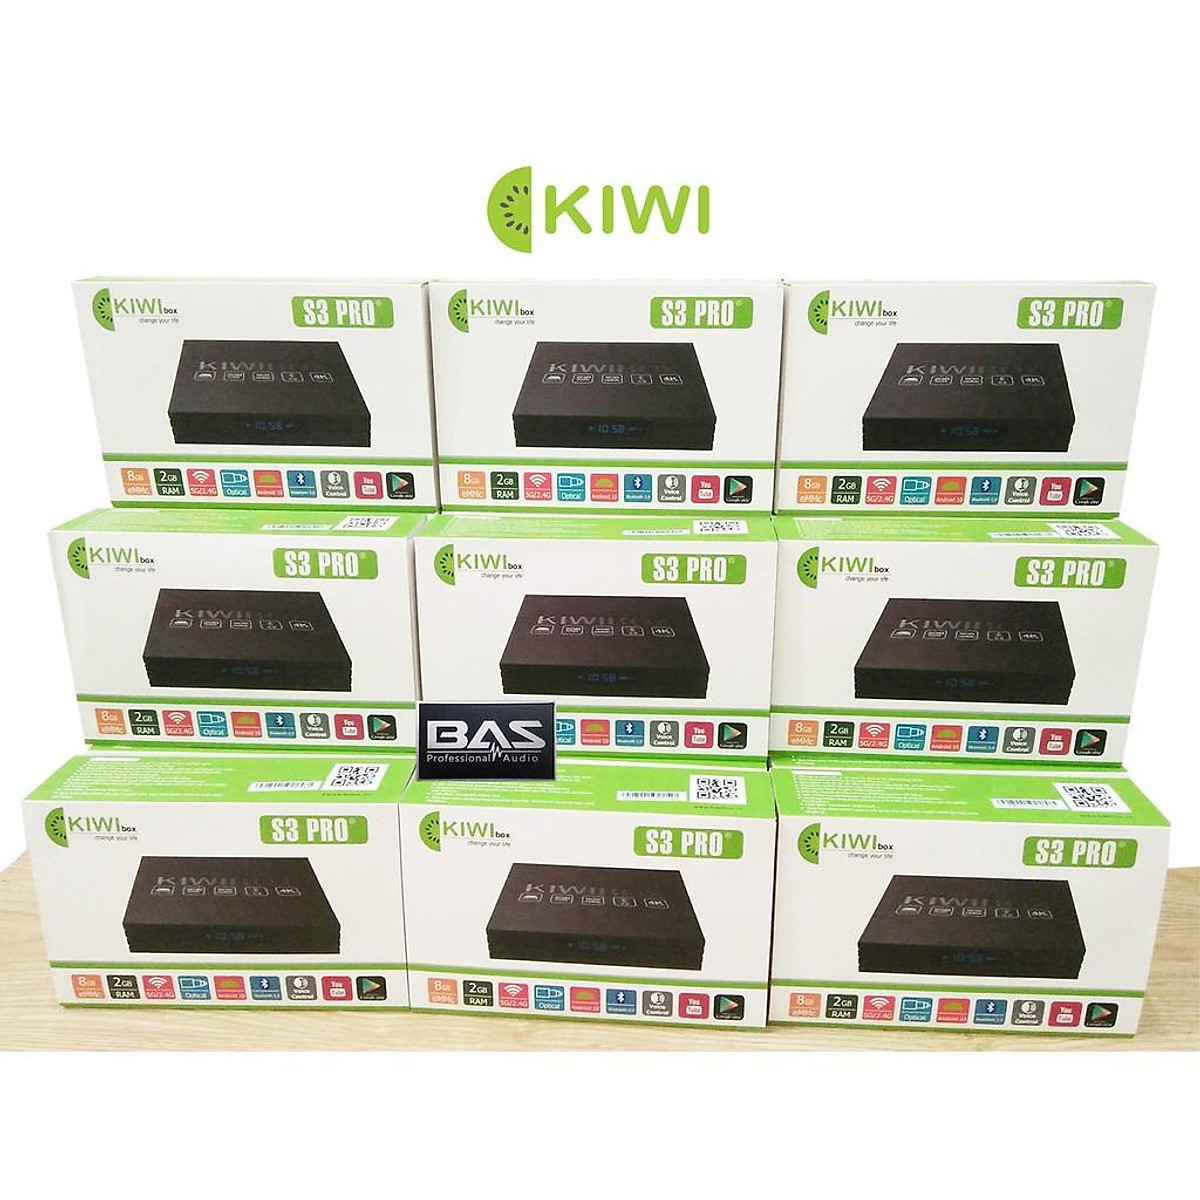 Kiwibox S3 Pro, Ram 2G, hỗ trợ cổng quang, bluetooth, hàng chính hãng